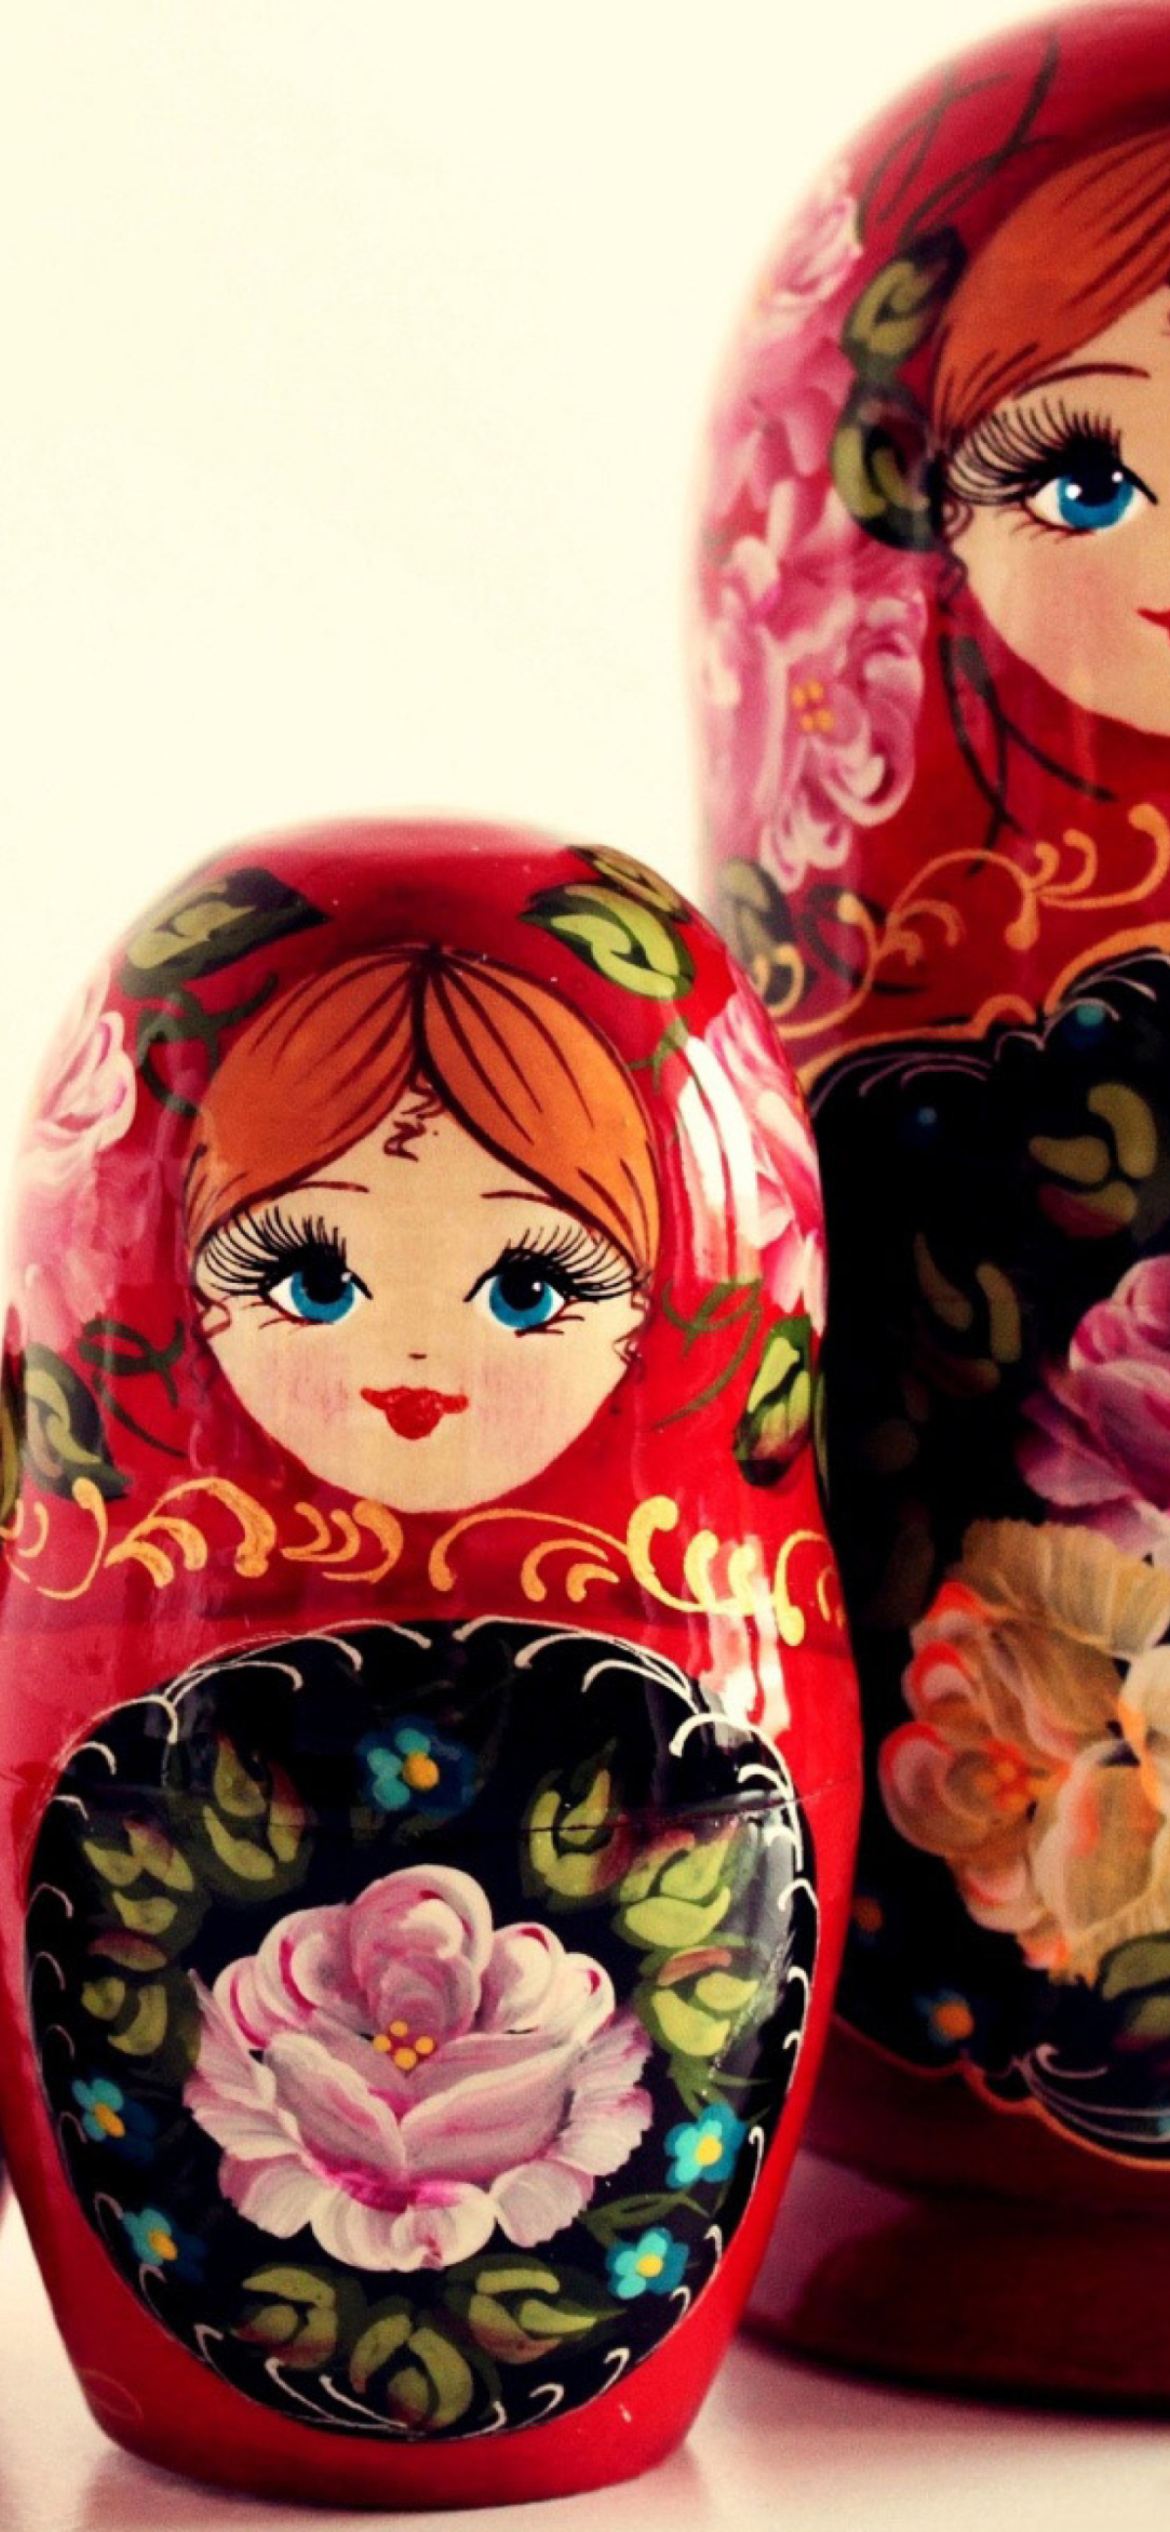 Russian Dolls wallpaper 1170x2532